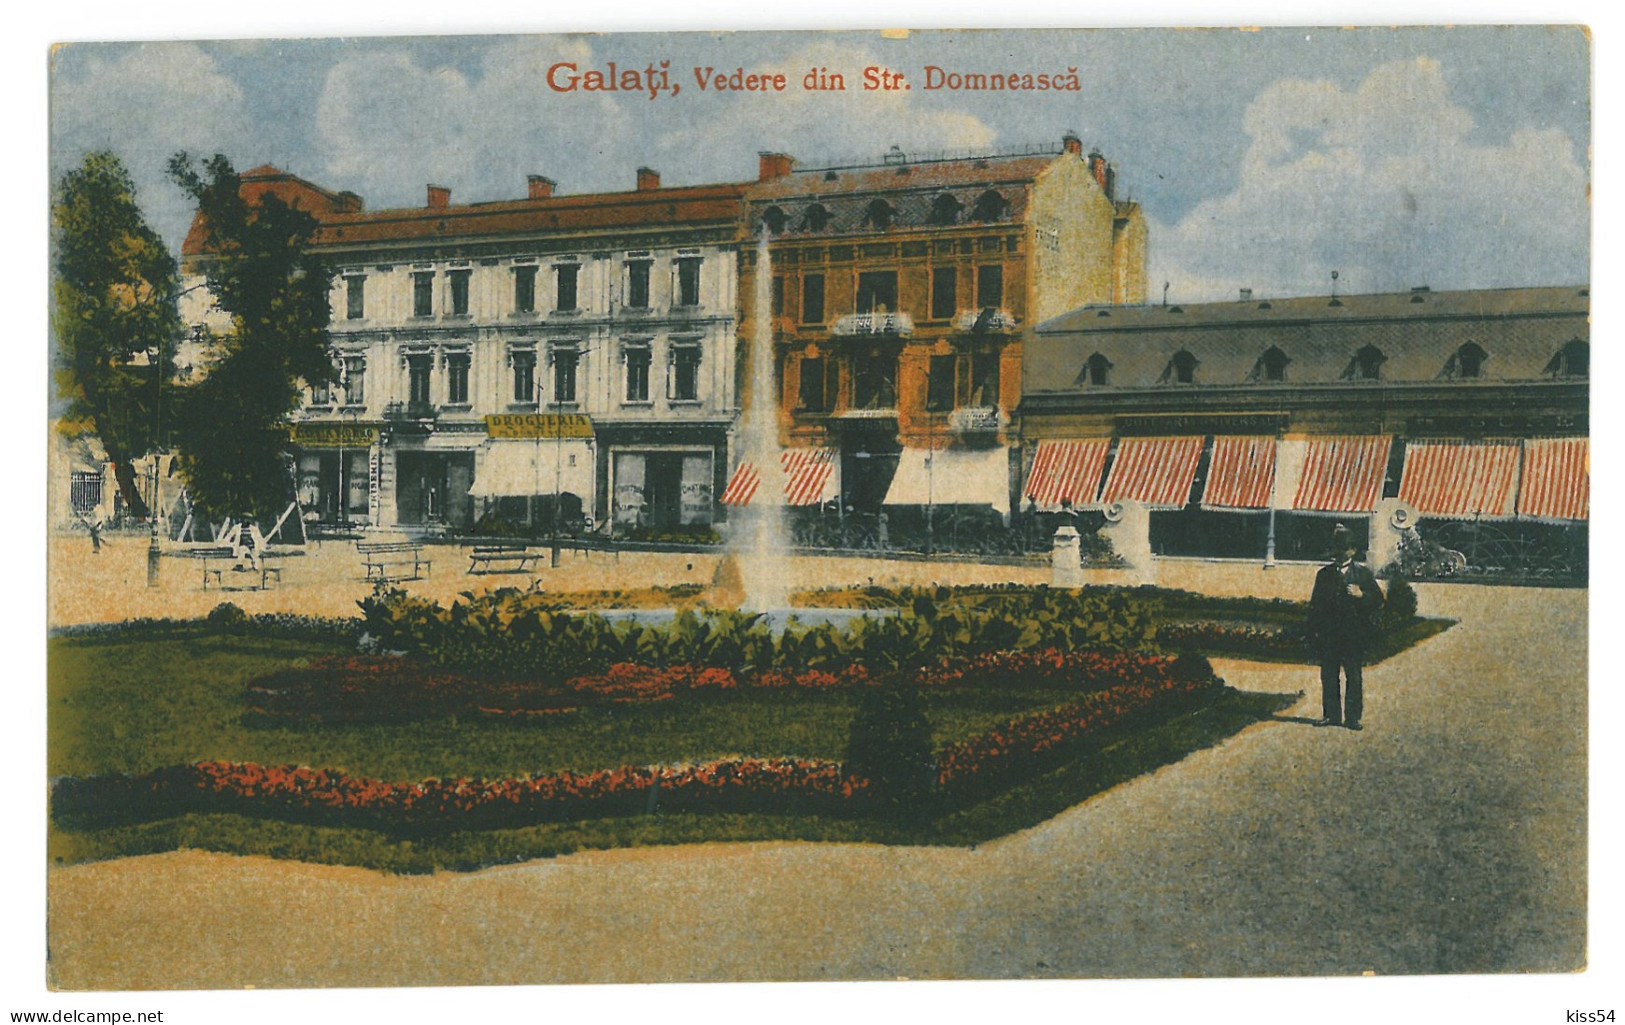 RO 38 - 23738 GALATI, Park, Street Stores, Romania - Old Postcard - Used - 1919 - Romania